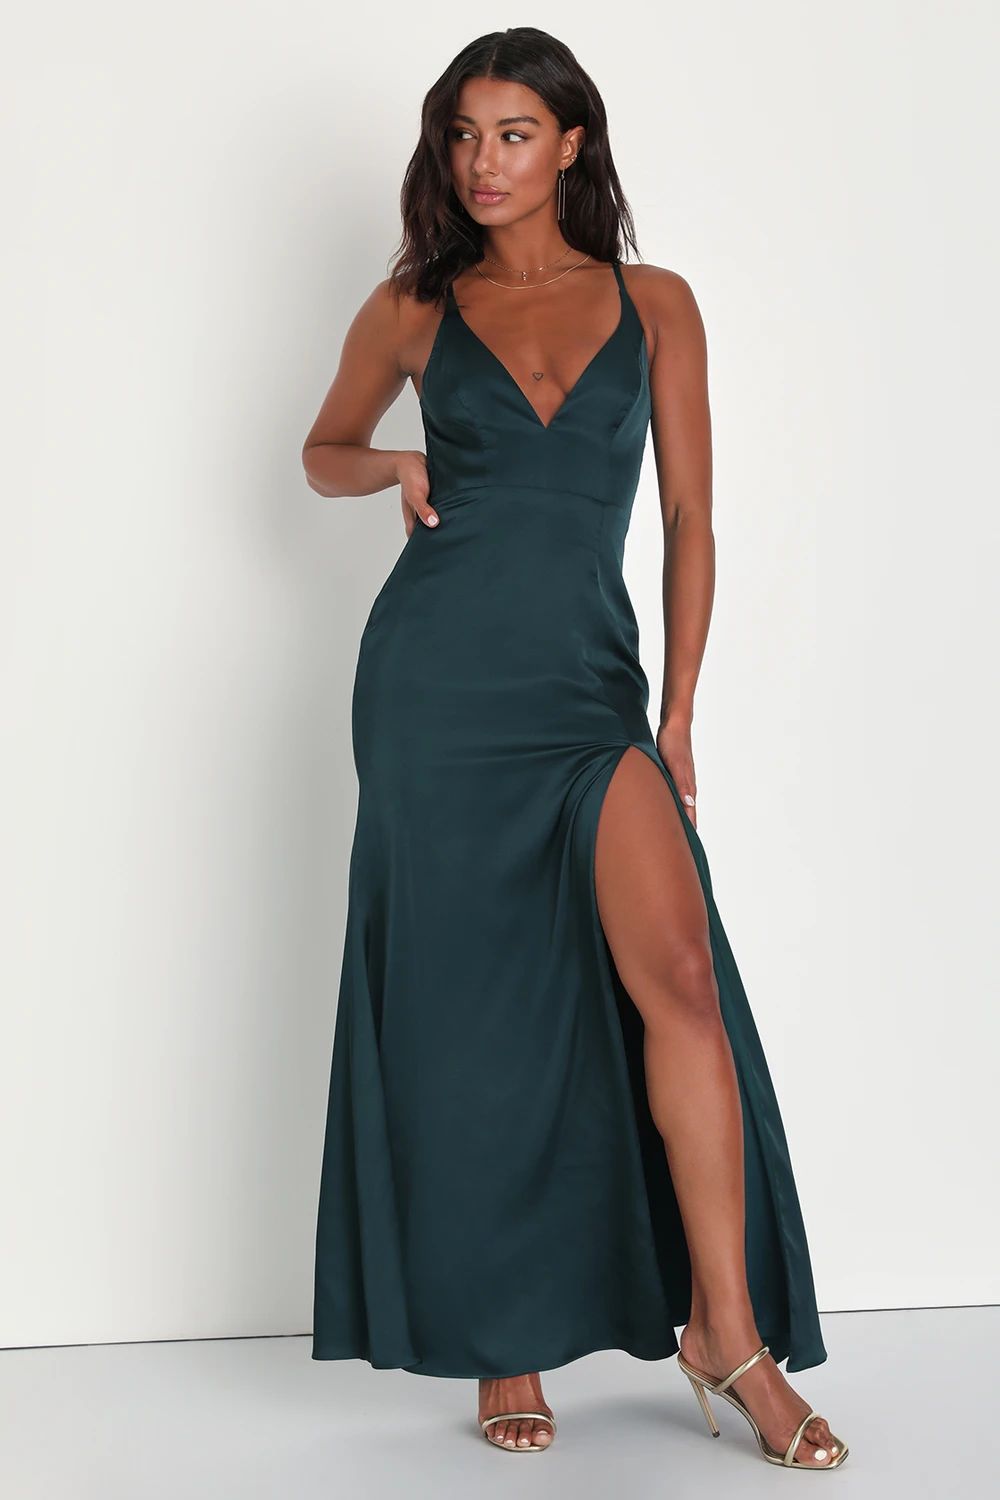 Moments of Elegance Emerald Satin Sleeveless Lace Maxi Dress | Lulus (US)